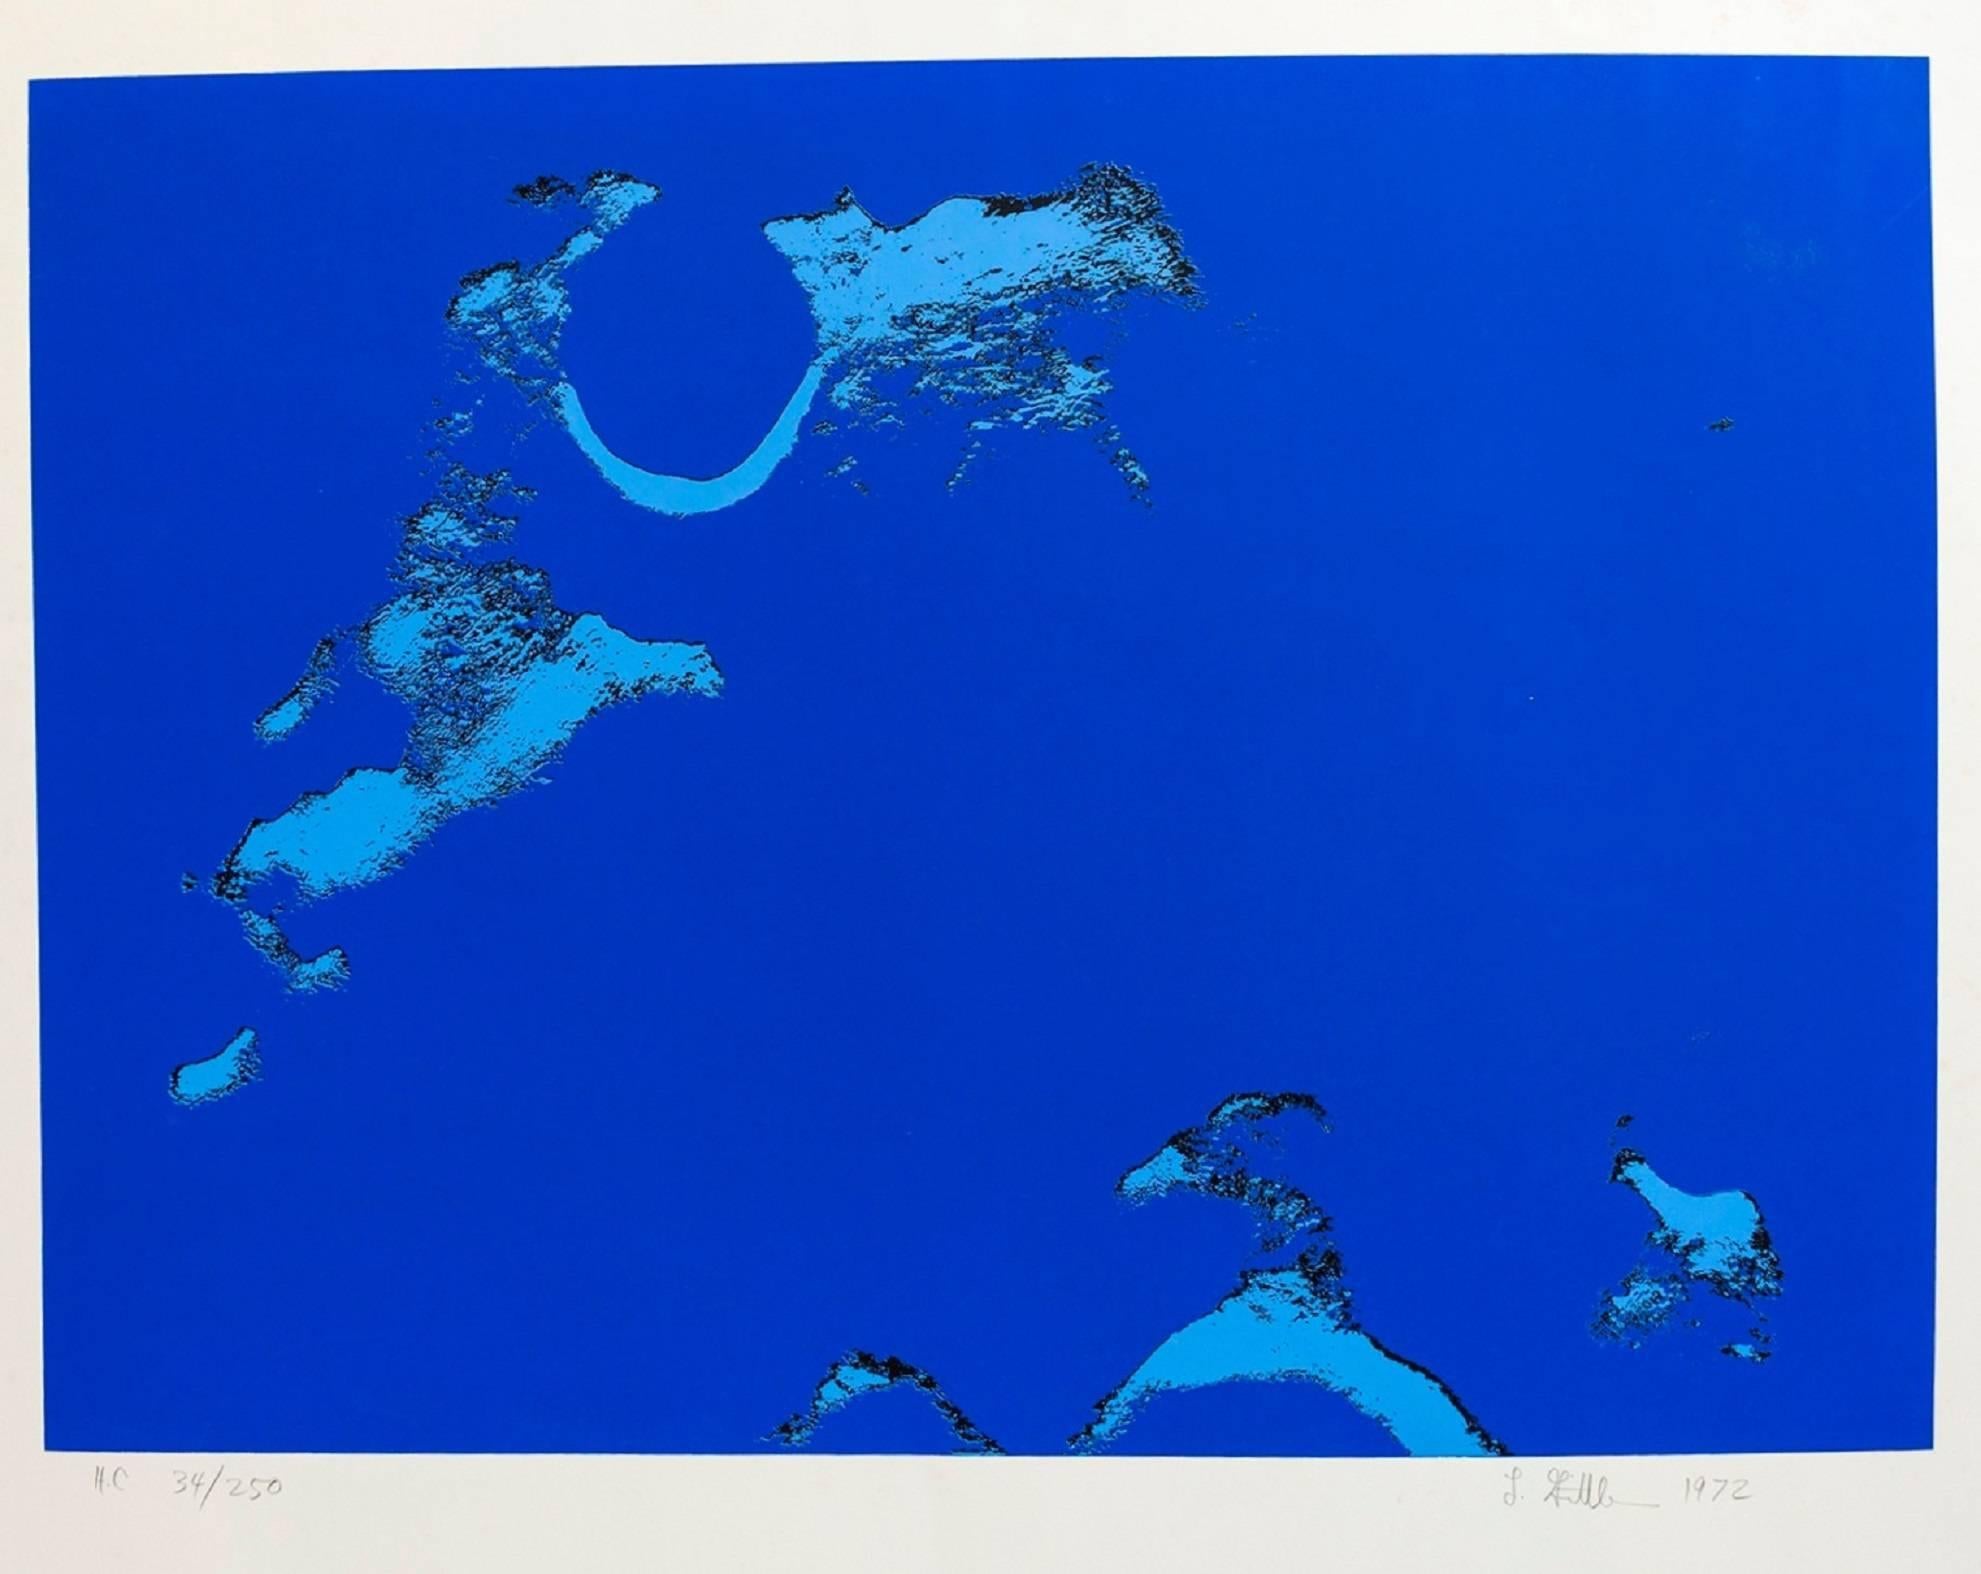 Len Gittleman Abstract Print - Lunar Landscape Abstract Signed Numbered Screenprint Blue